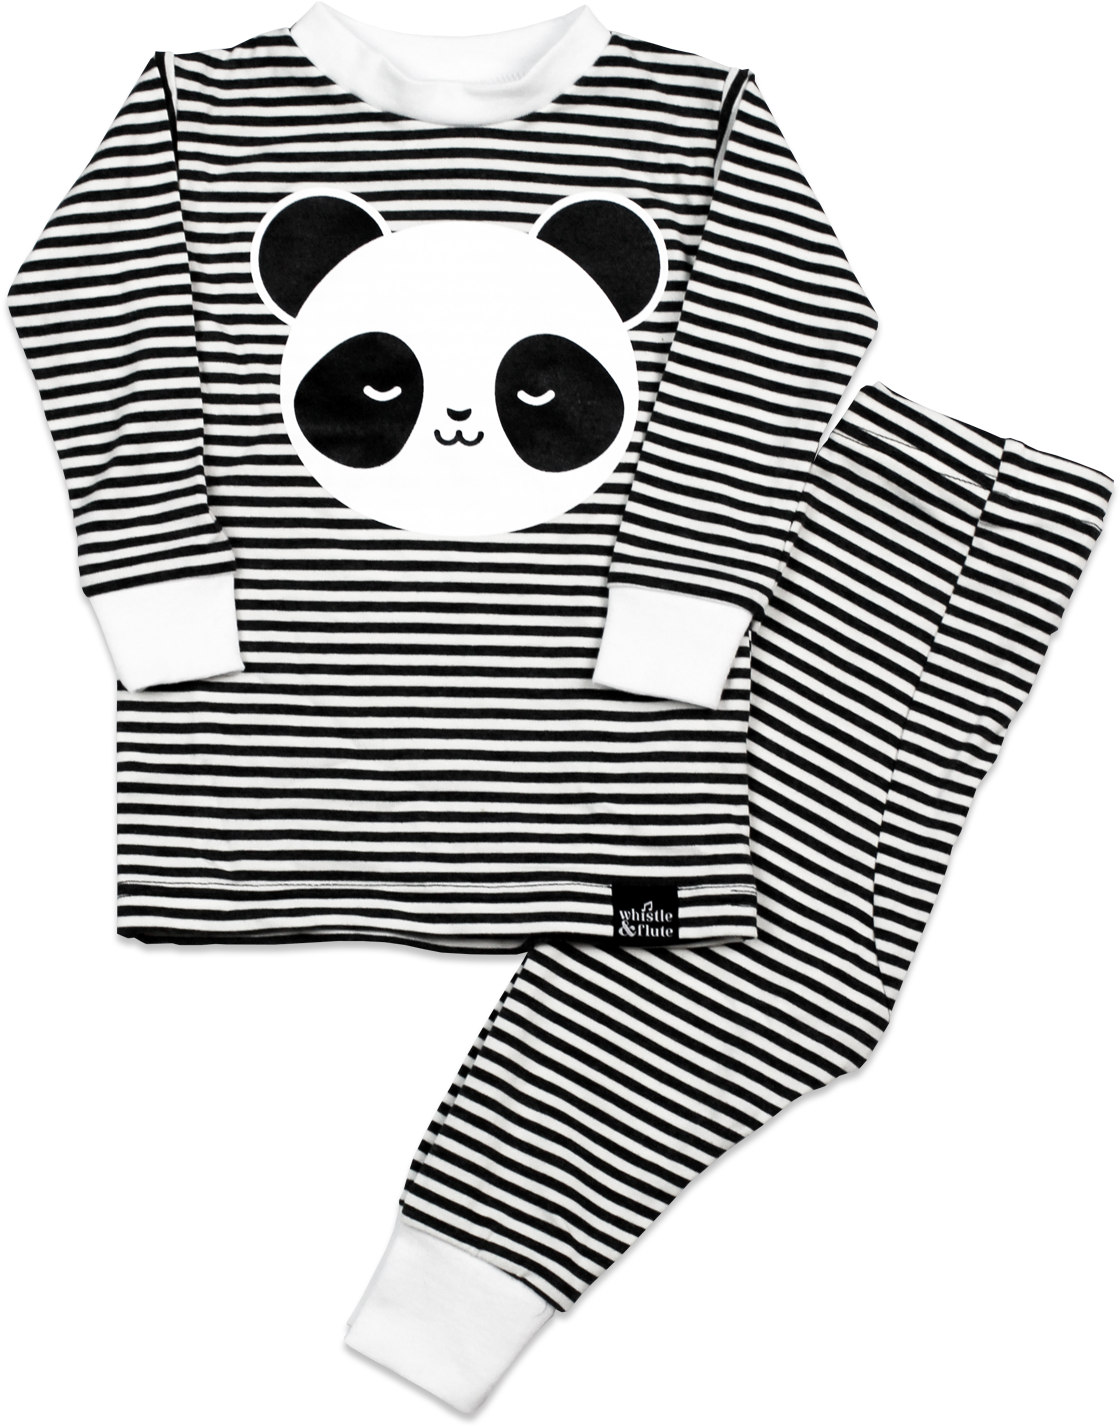 Kawaii Sleepy Panda Pyjama - Kawaii Sleepy Panda Pyjama (1500x1500)